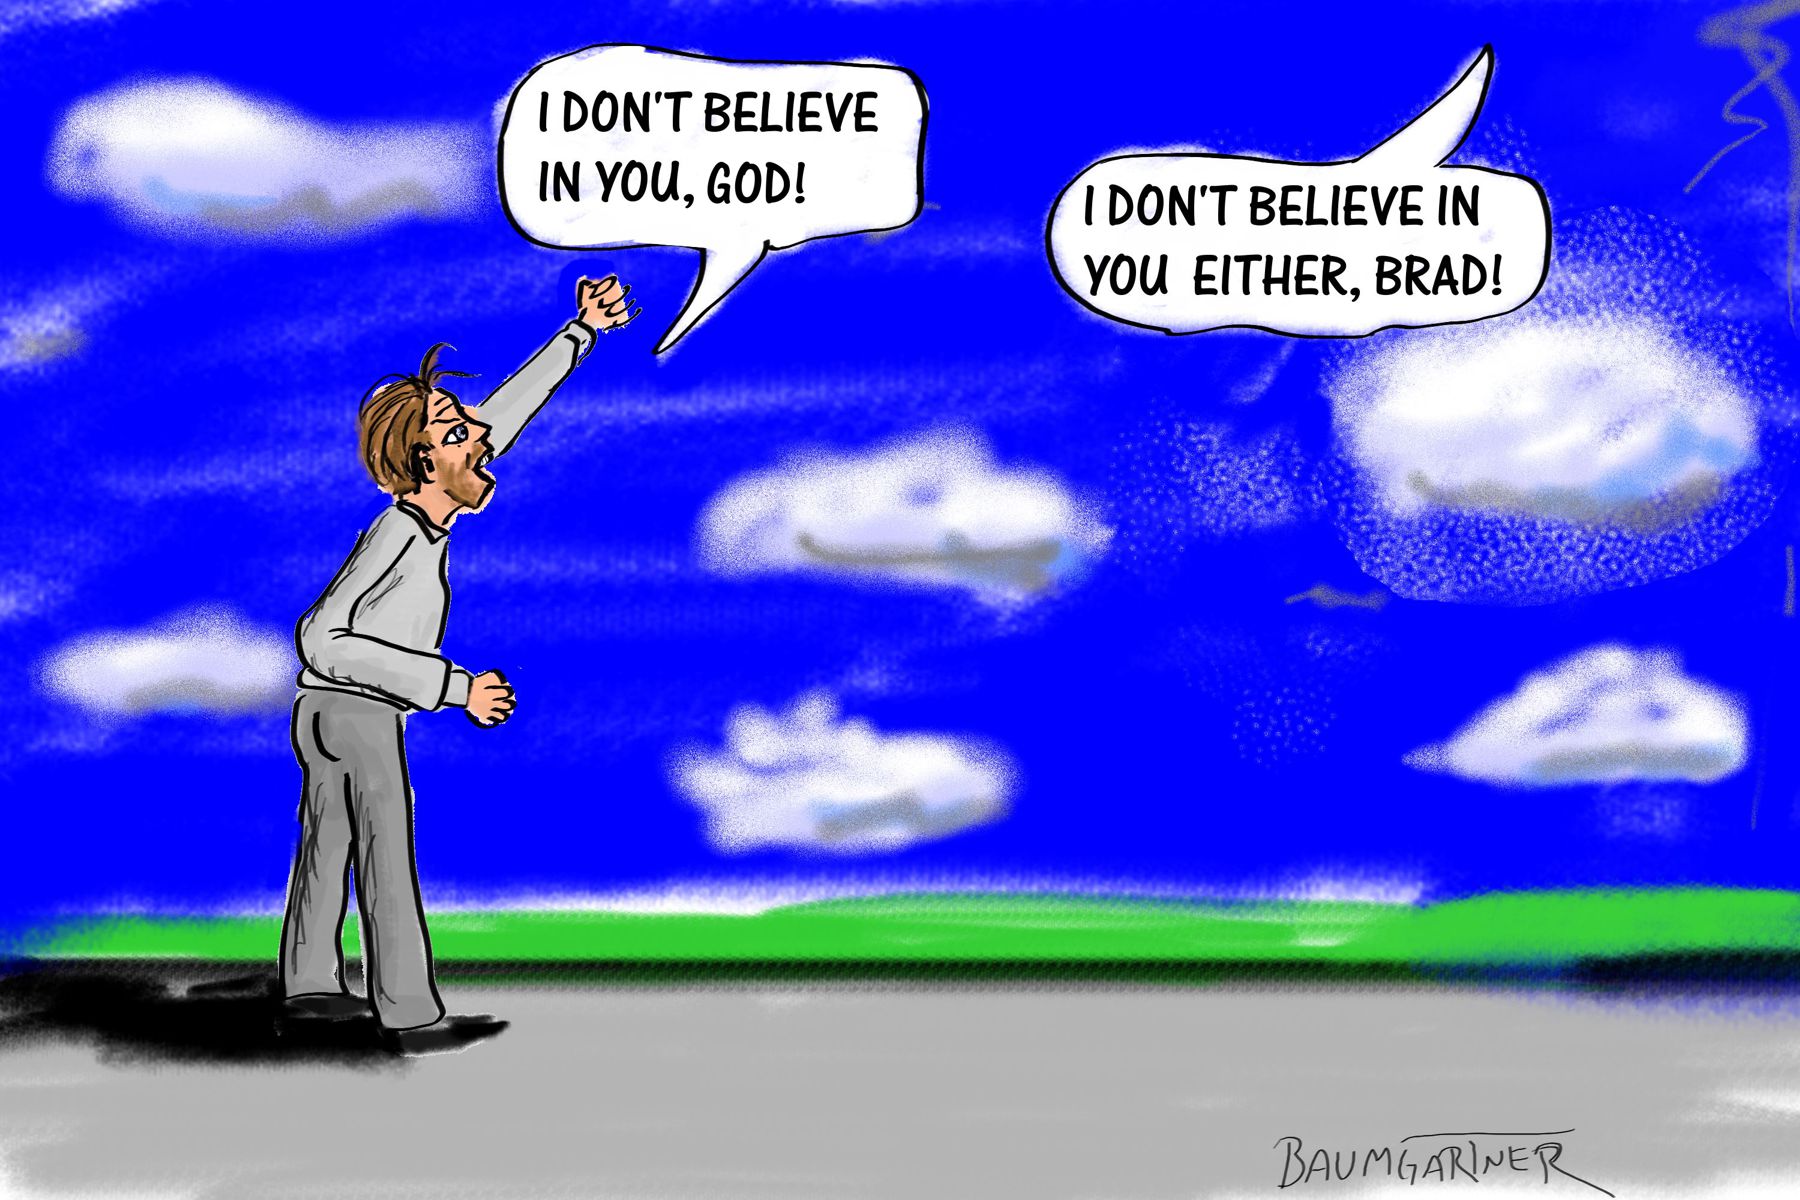 Cartoon: man shouting he does not believe in God